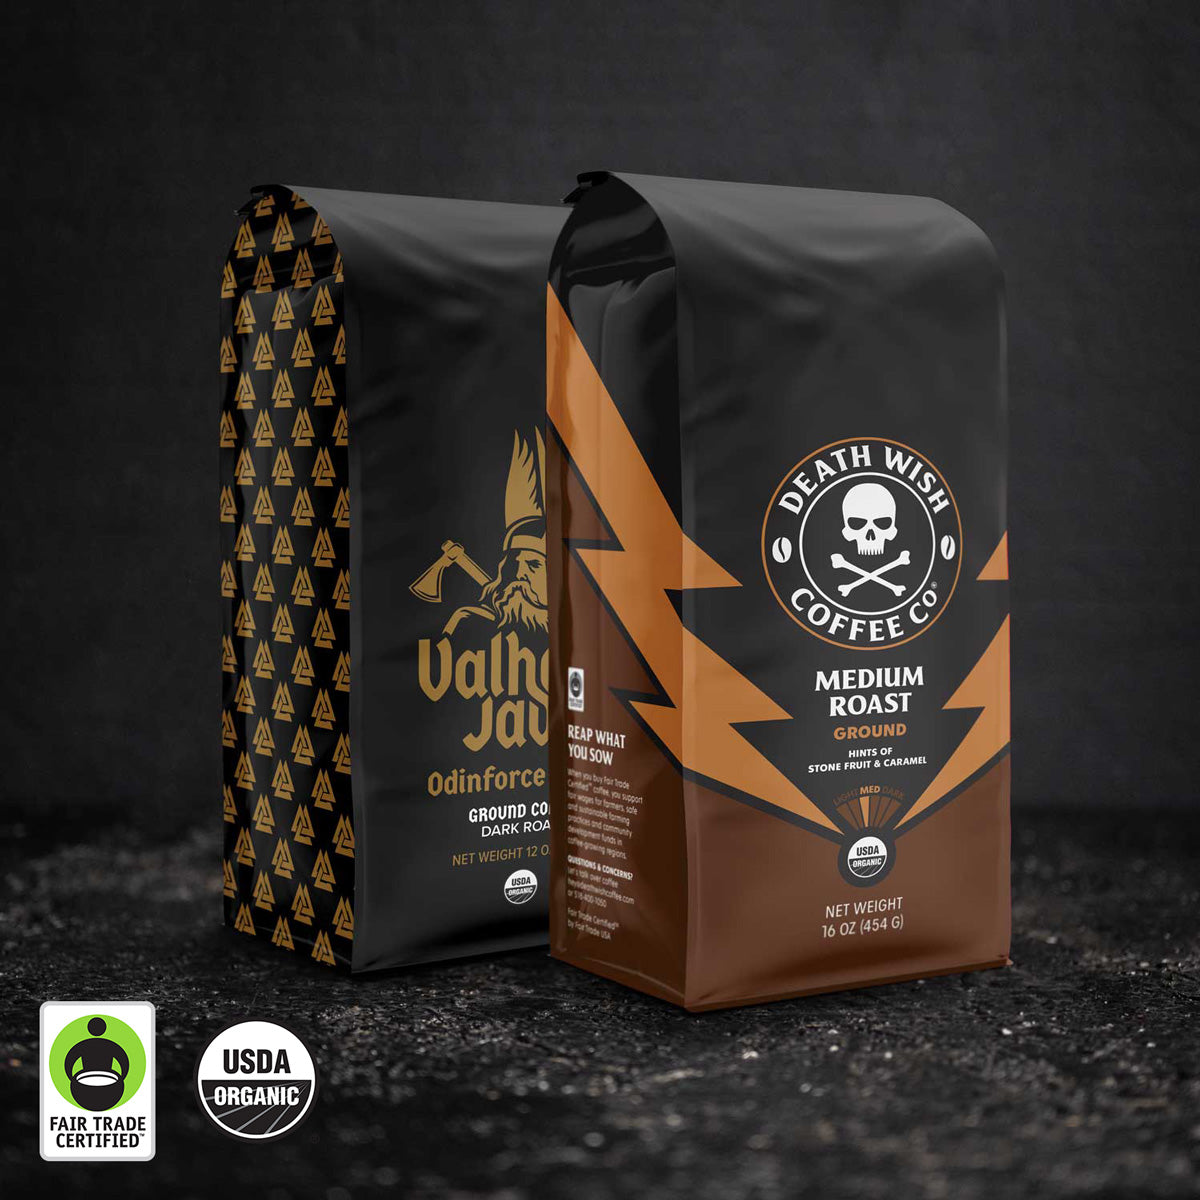 Death Wish Coffee Medium Roast + Valhalla Java Ground Bundle